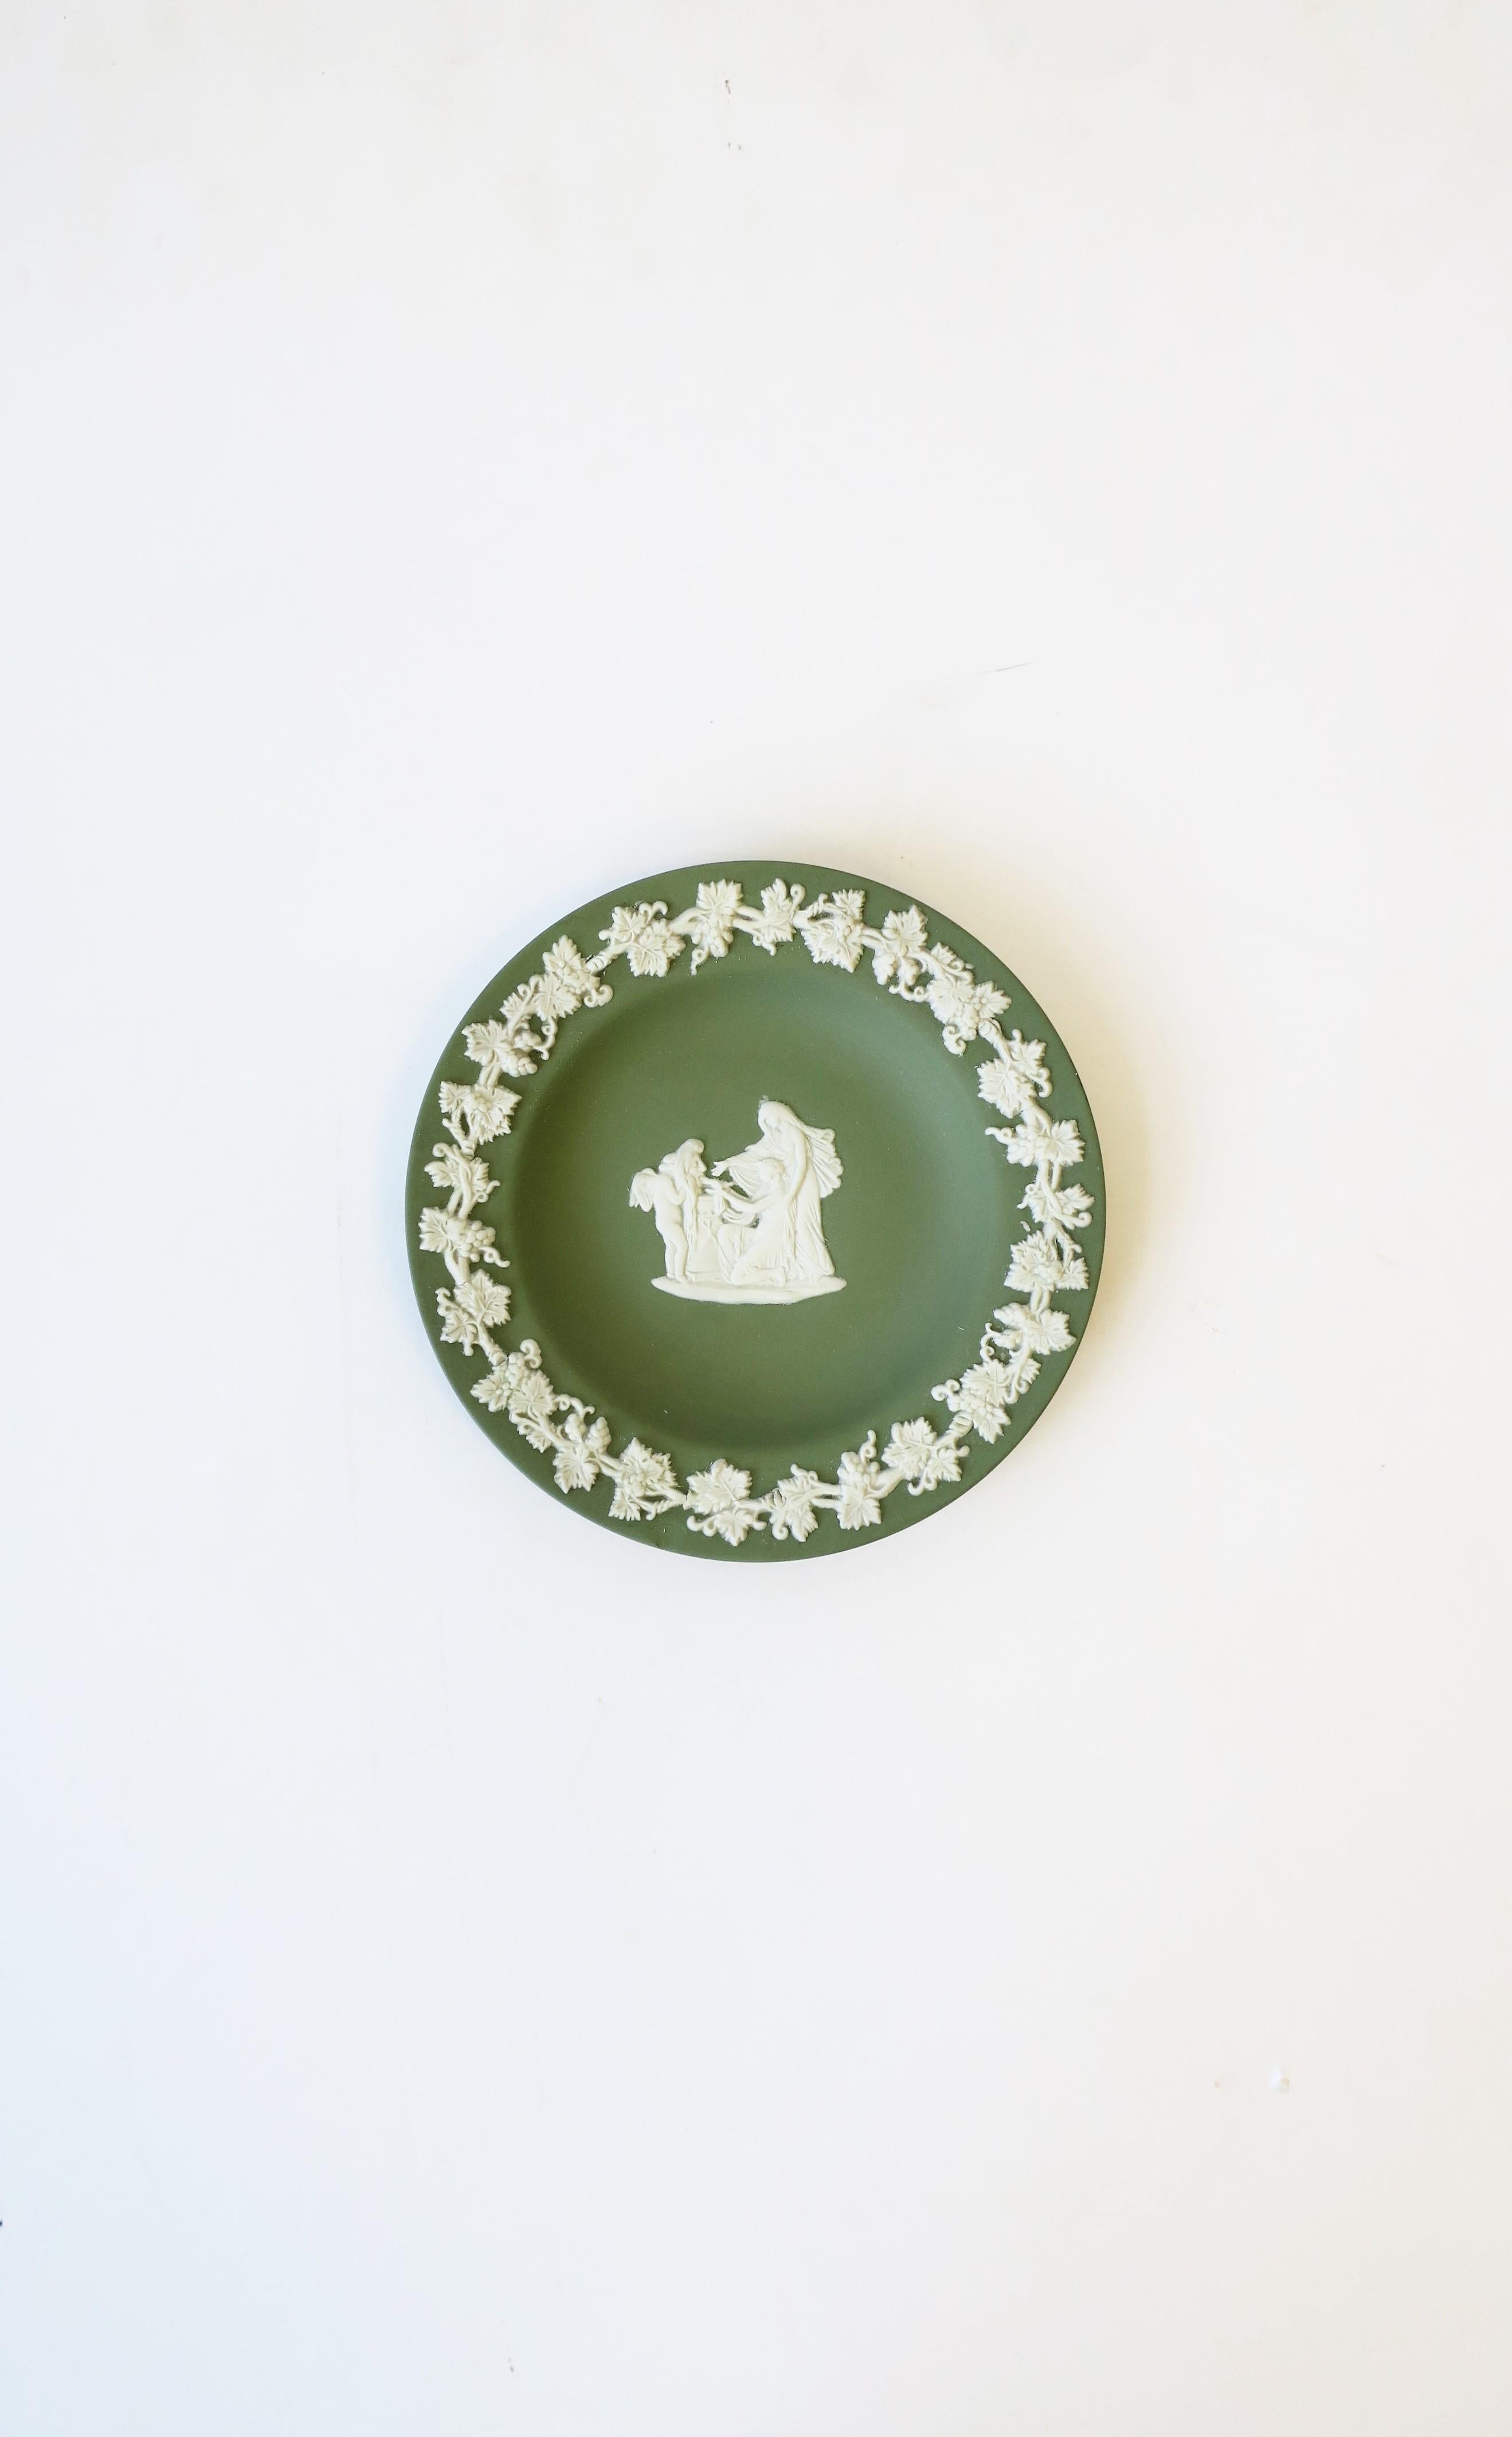 Magnifique plat à bijoux rond en jaspe vert sauge et blanc de Wedgwood, de conception néoclassique, vers le 20e siècle, 1979, Angleterre. La pièce est un grès mat de couleur vert clair avec un relief néoclassique blanc au centre et un motif de